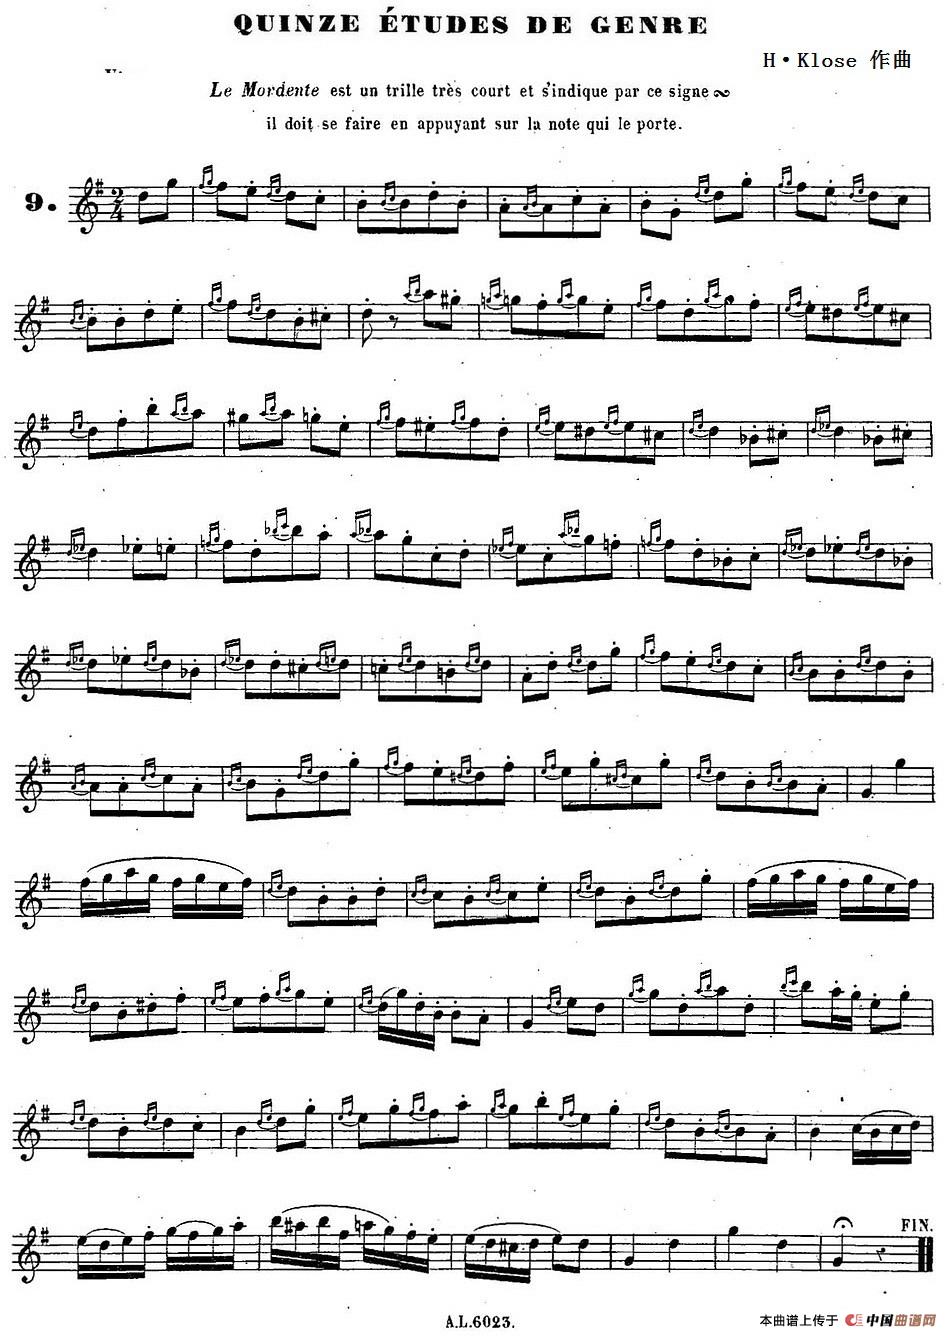 H·Klose练习曲（Quinze etudes de genre—9）